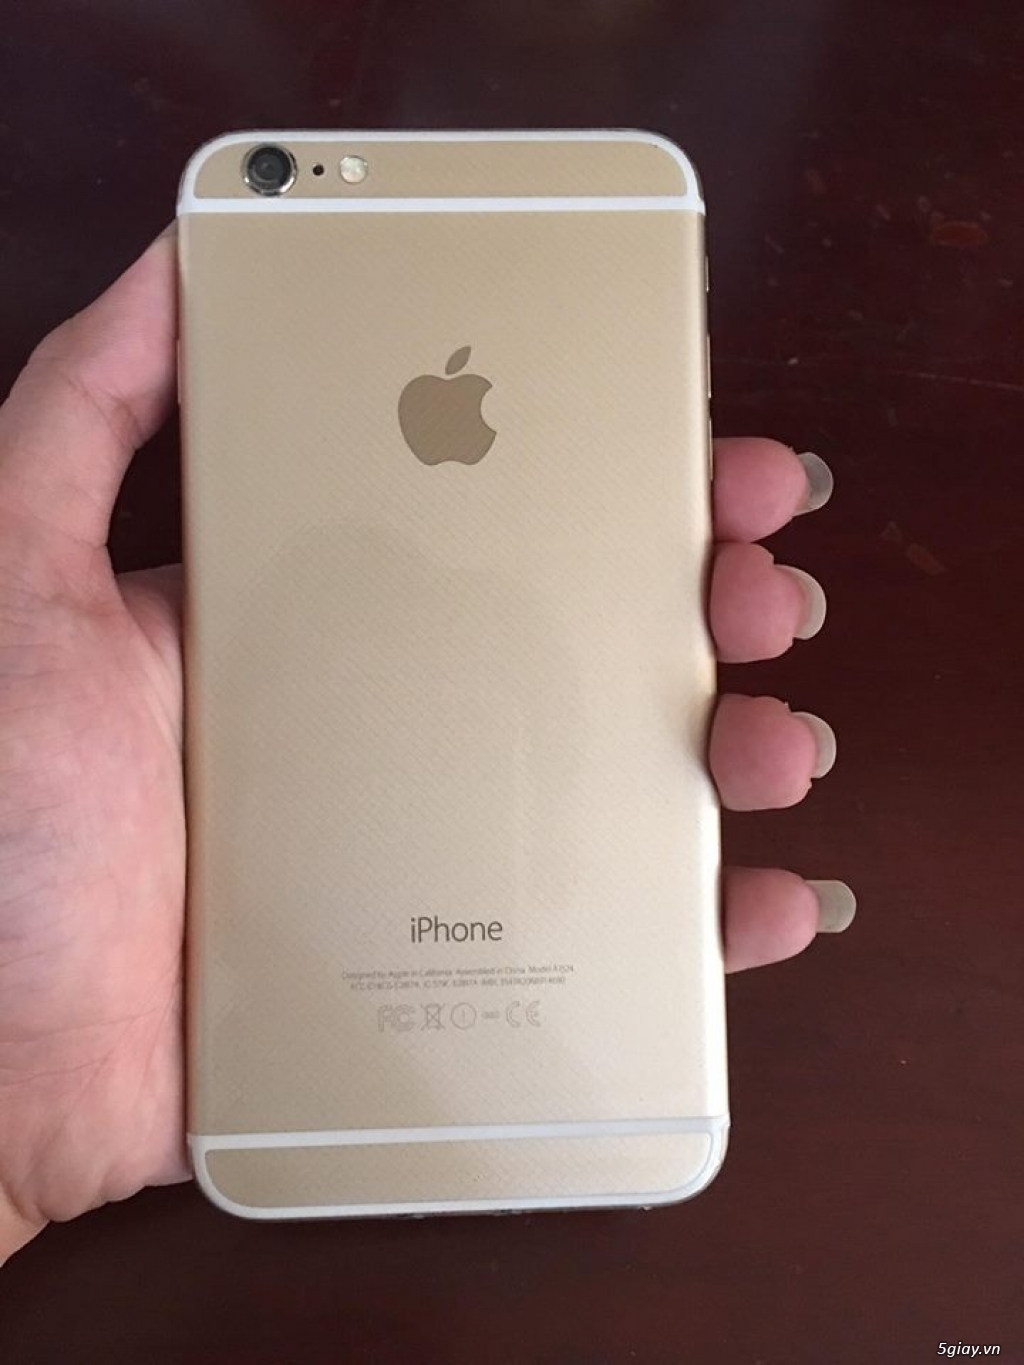 Iphone 6 plus Gold hàng Mỹ máy zin like new 99% (full phụ kiện)